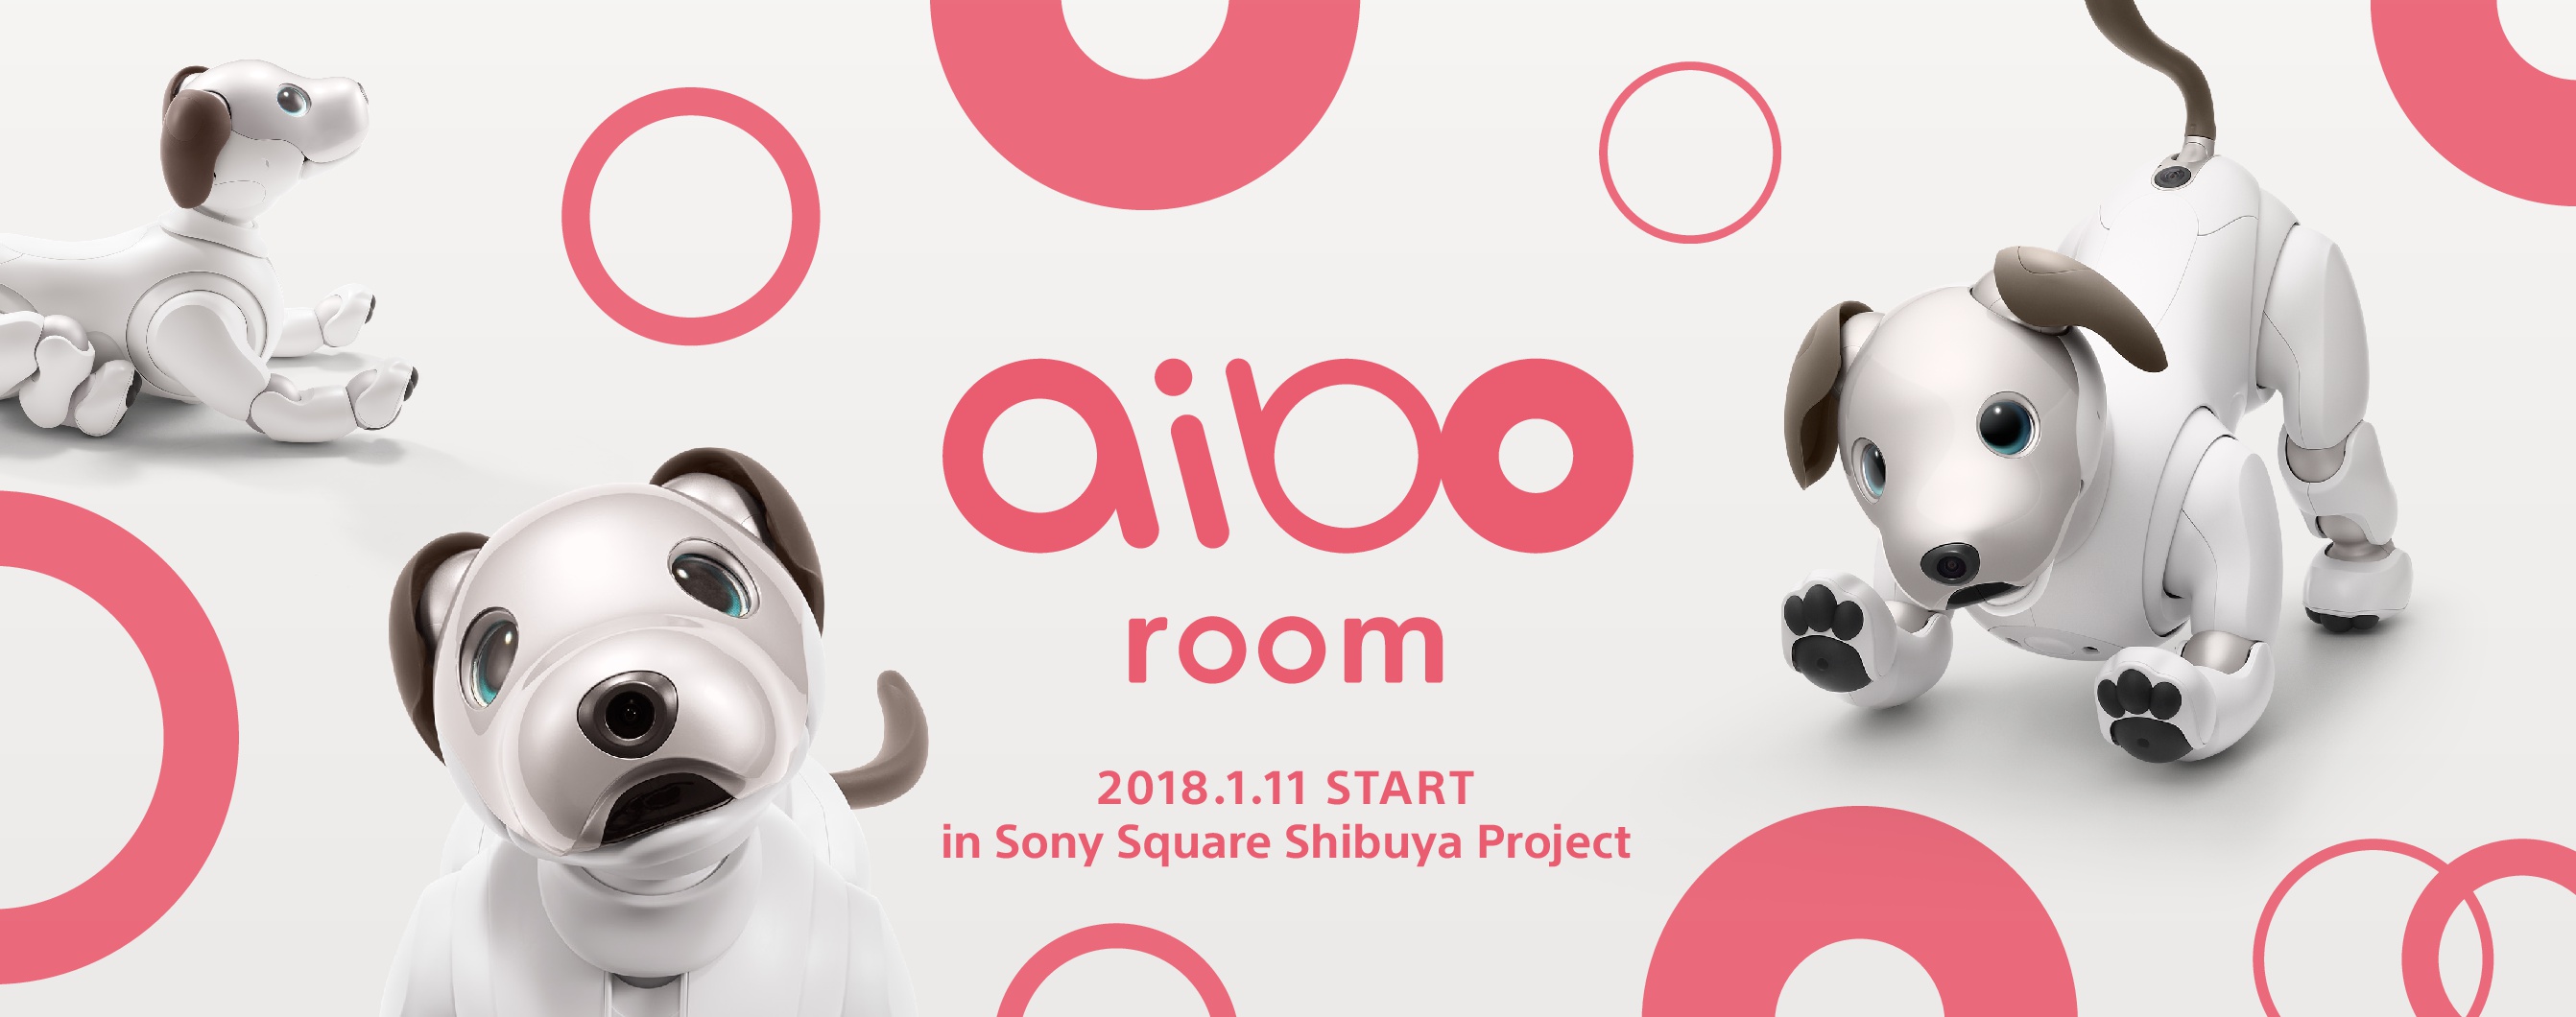 ソニースクエア渋谷プロジェクトに Aibo Room が登場 Aiboといち早く触れ合える場所 ソニー株式会社のプレスリリース